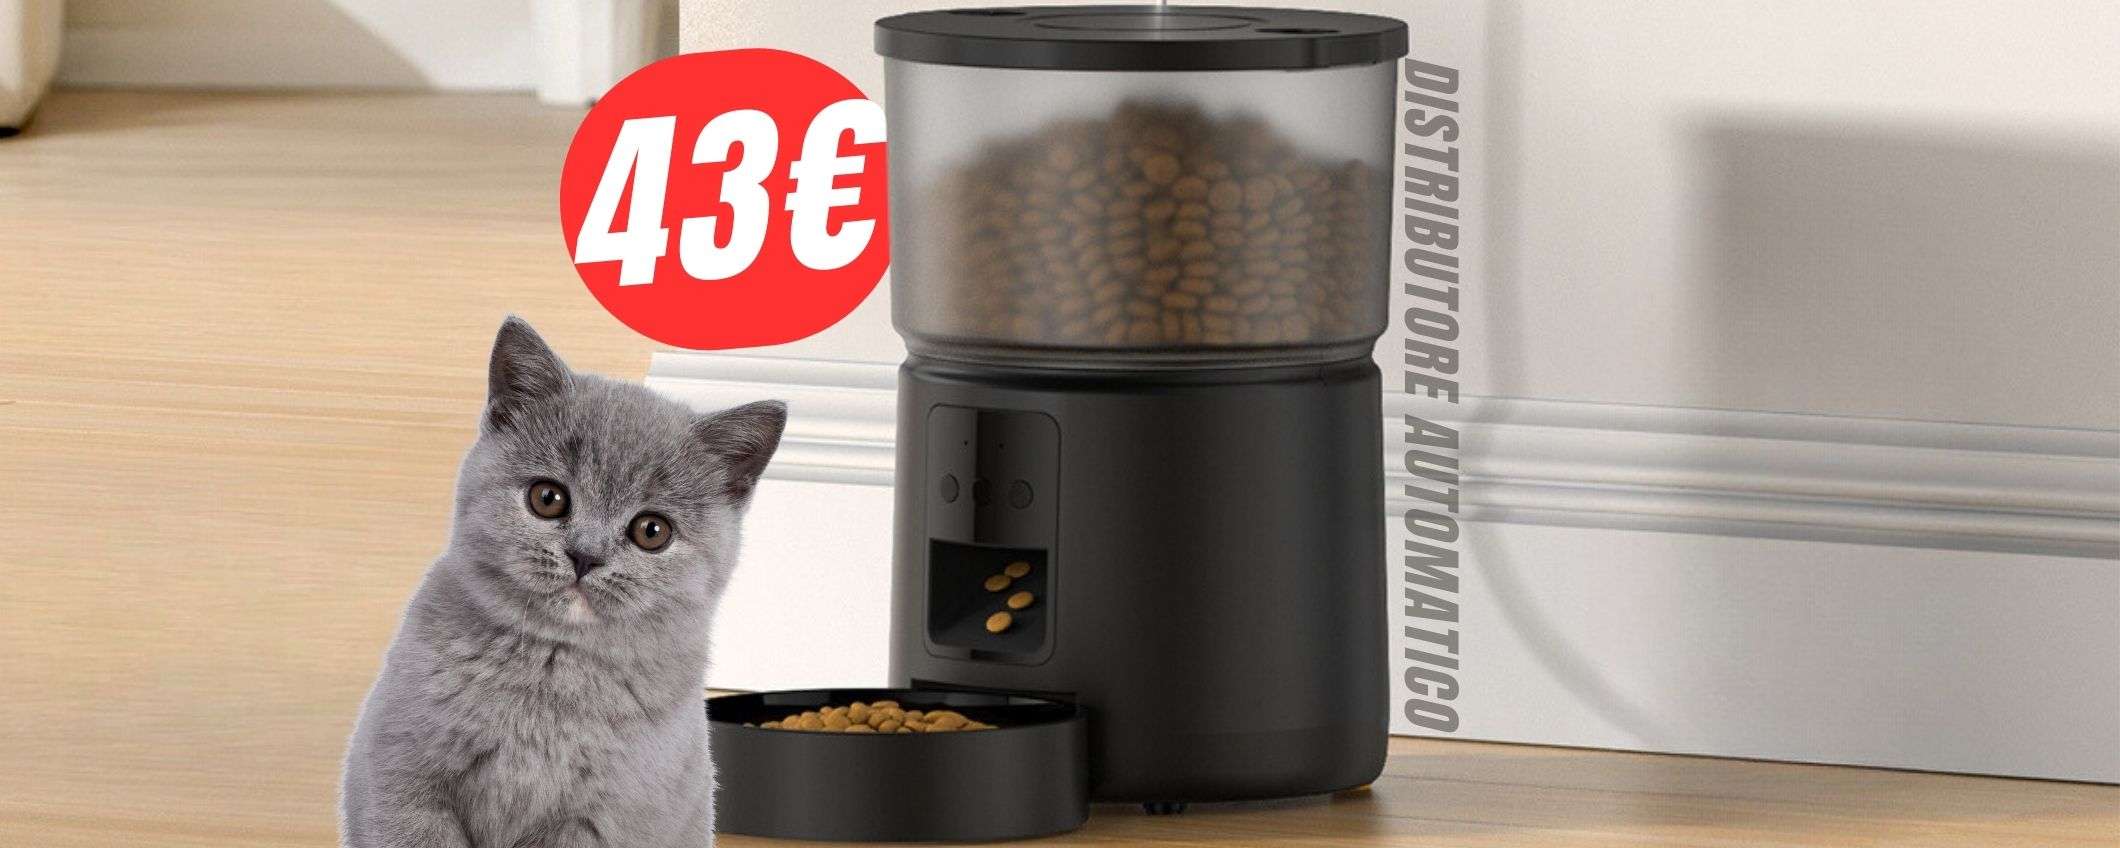 Questo distributore nutre i tuoi animali in autonomia (e costa solo 43€!)